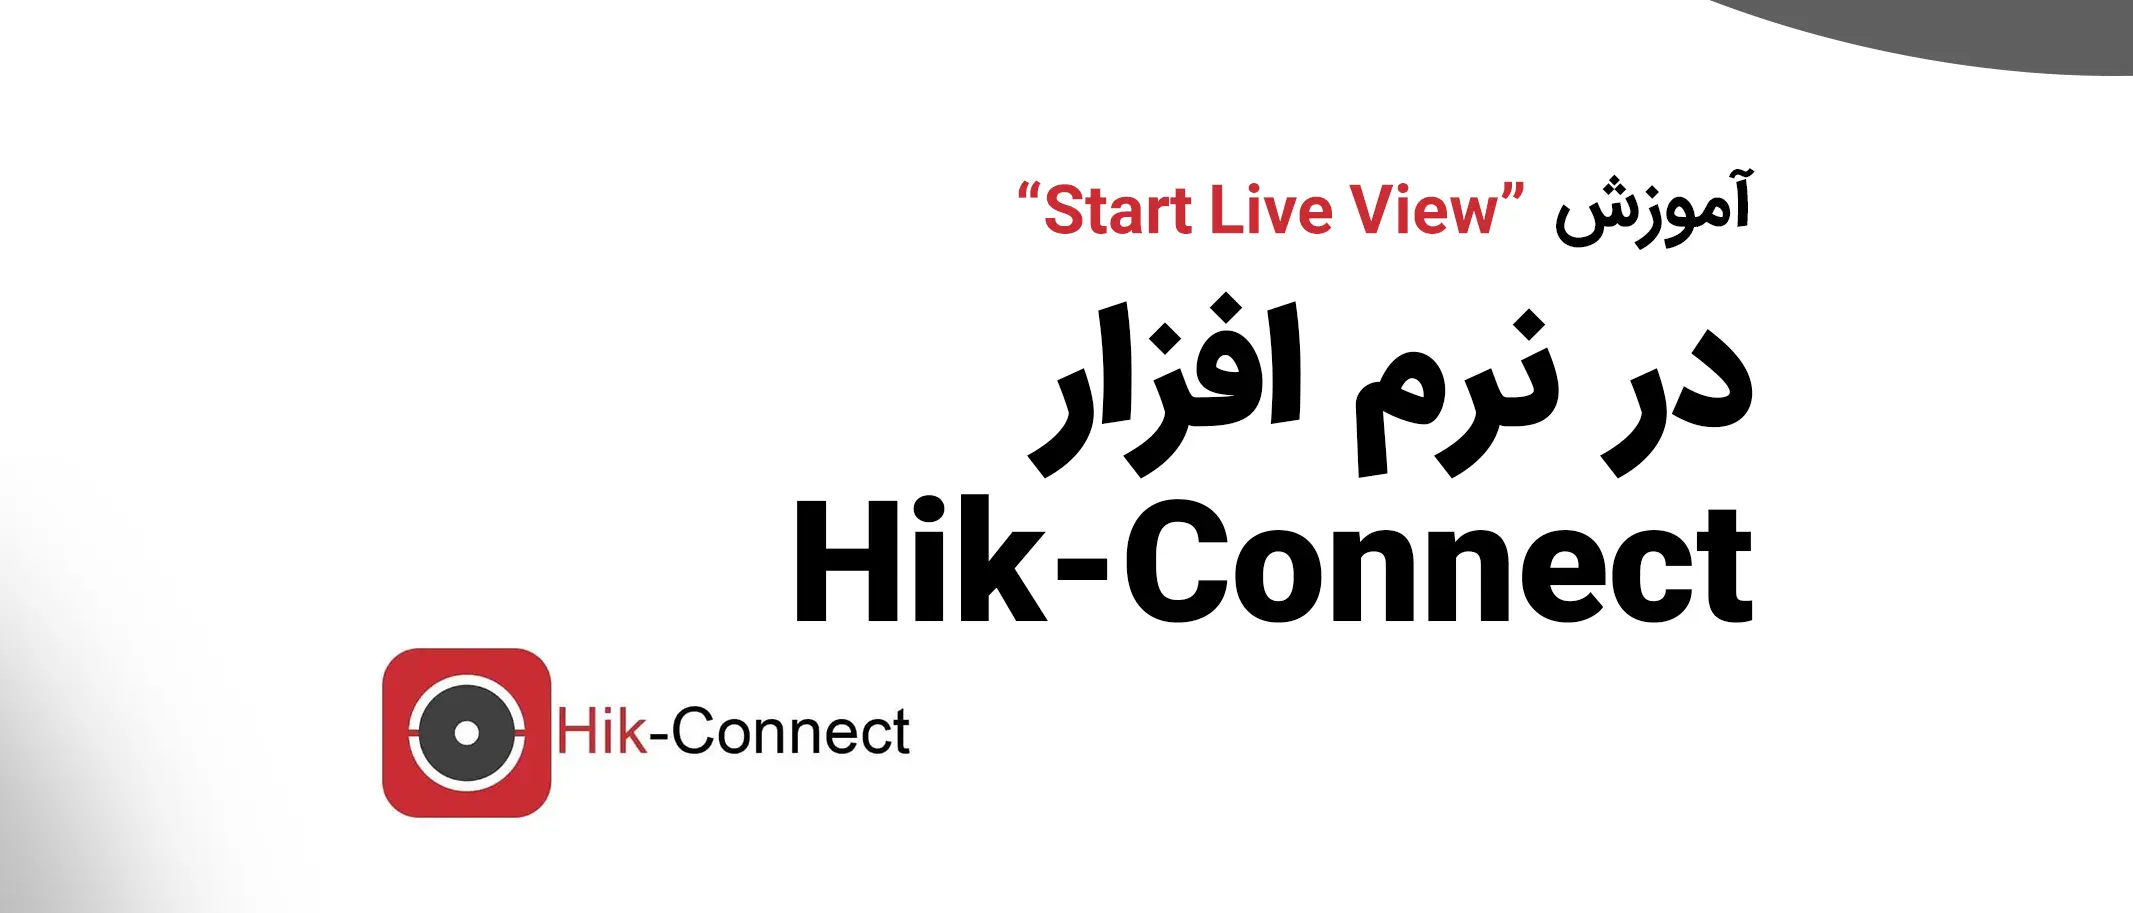 آموزش نرم افزار Hik-Connect | بخش "Start Live View"